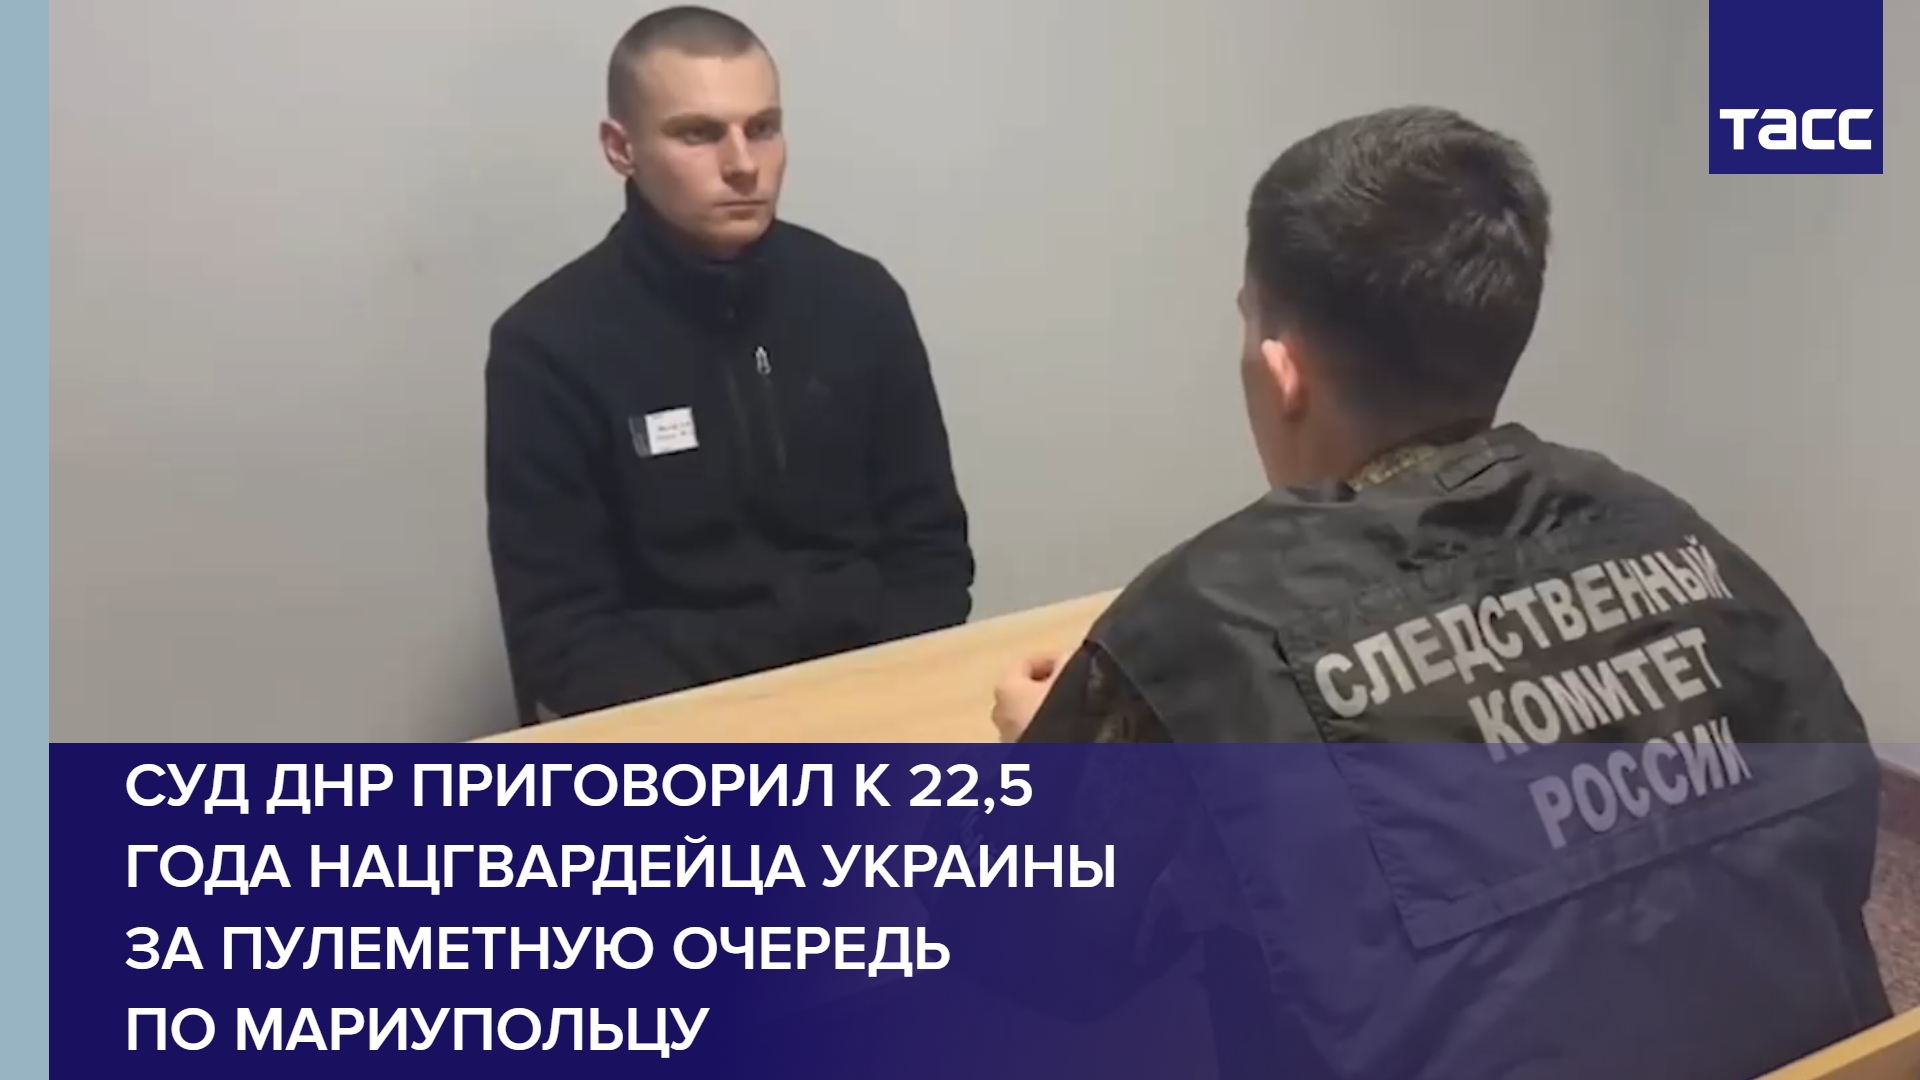 Суд ДНР приговорил к 22,5 года нацгвардейца Украины за пулеметную очередь по мариупольцу